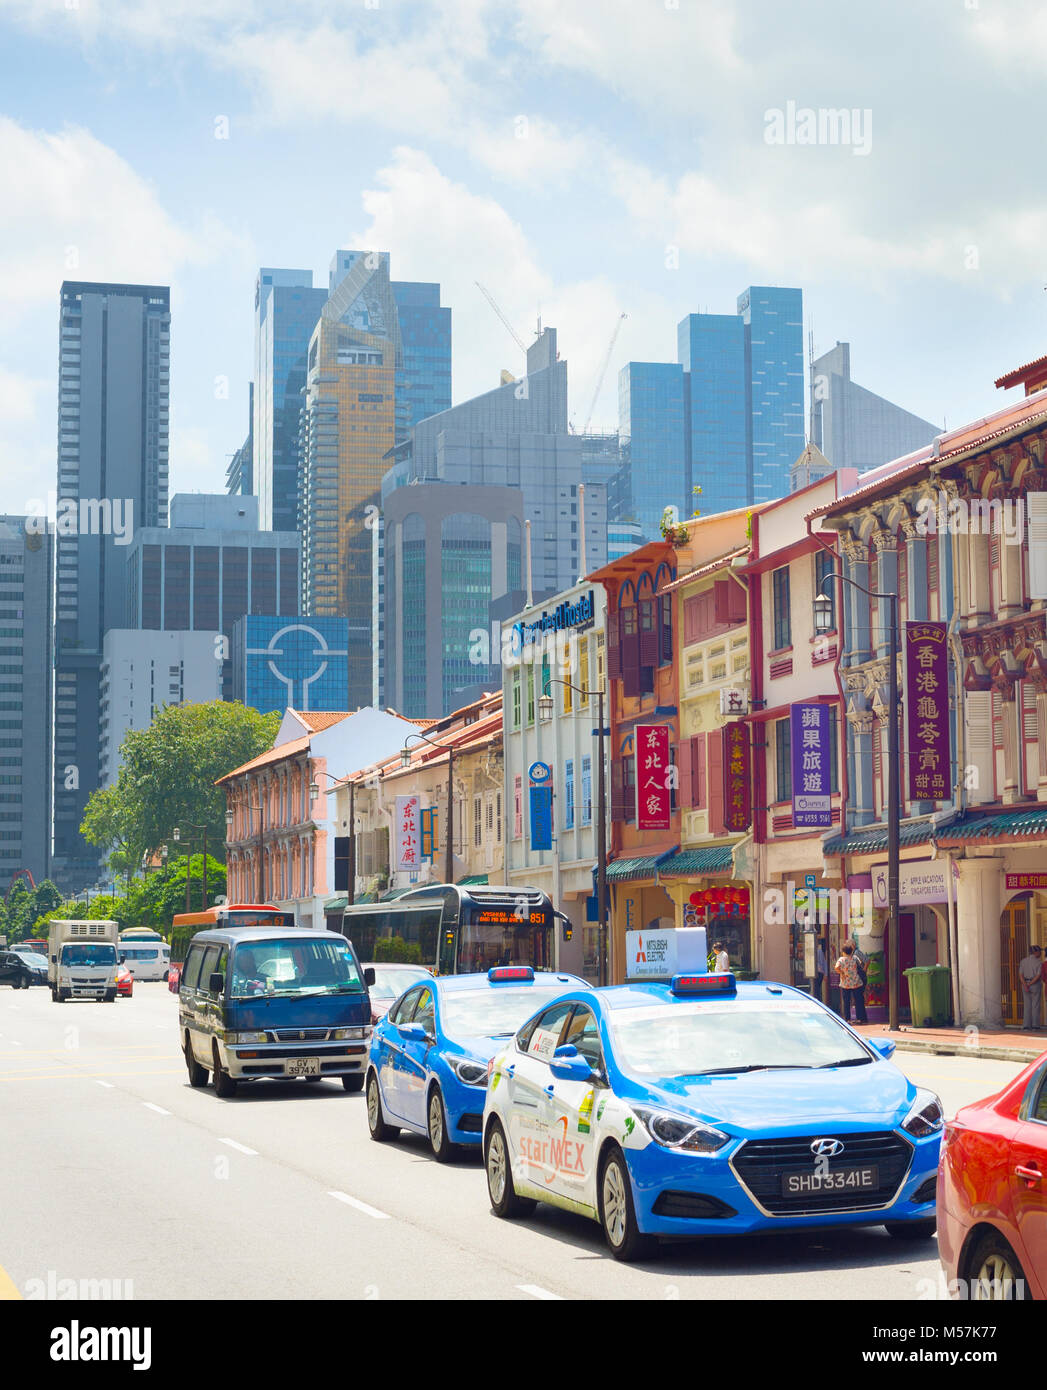 Singapour - 17 févr. 2017 : voitures sur une route de Chinatown à Singapour. Chinatown est une enclave ethnique situé dans le district de Outram dans le centre de l'un Banque D'Images